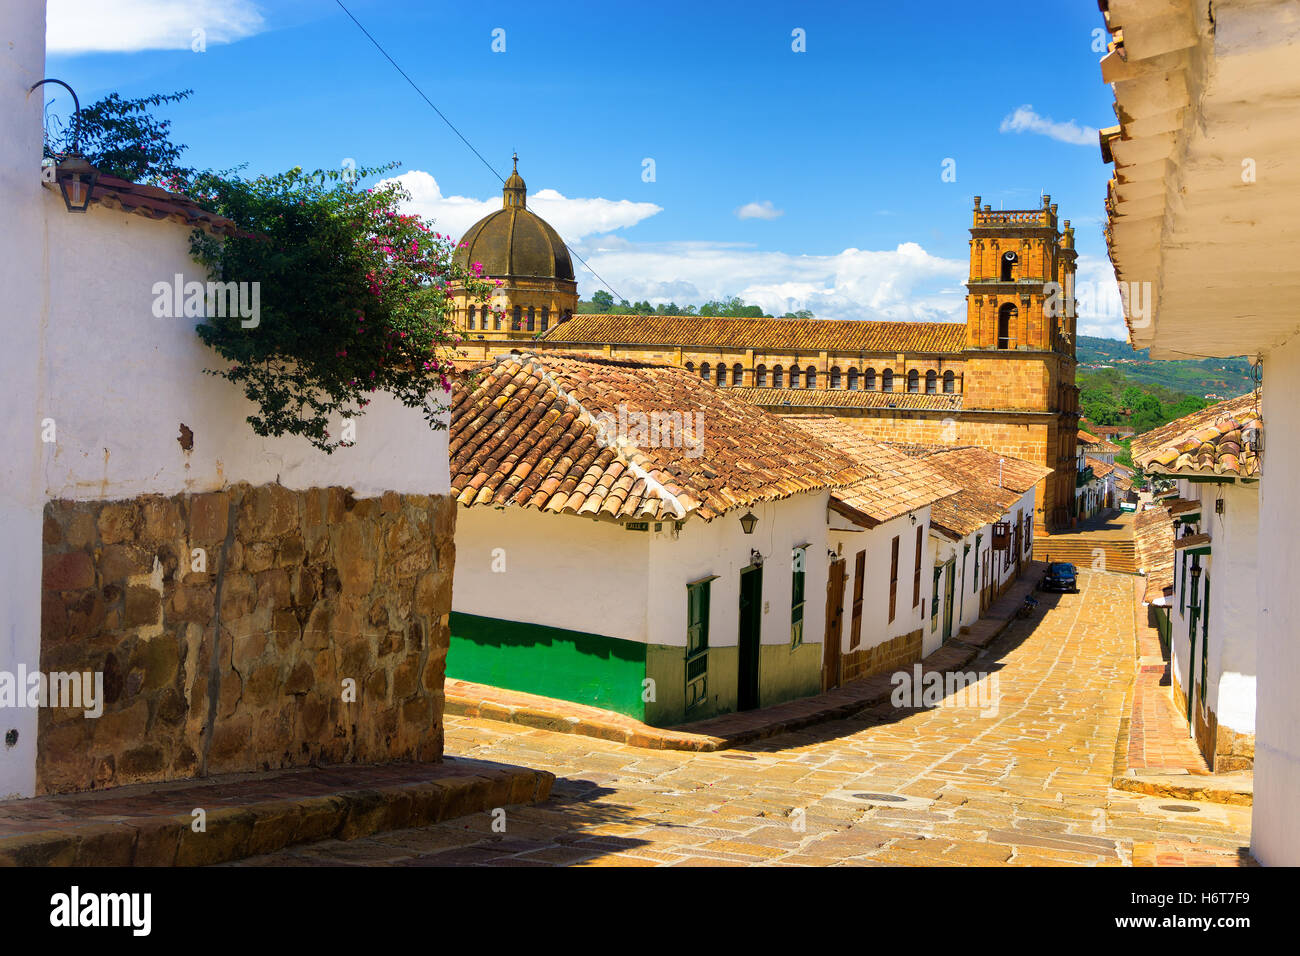 La rue coloniale et cathédrale de Barichara, Colombie Banque D'Images